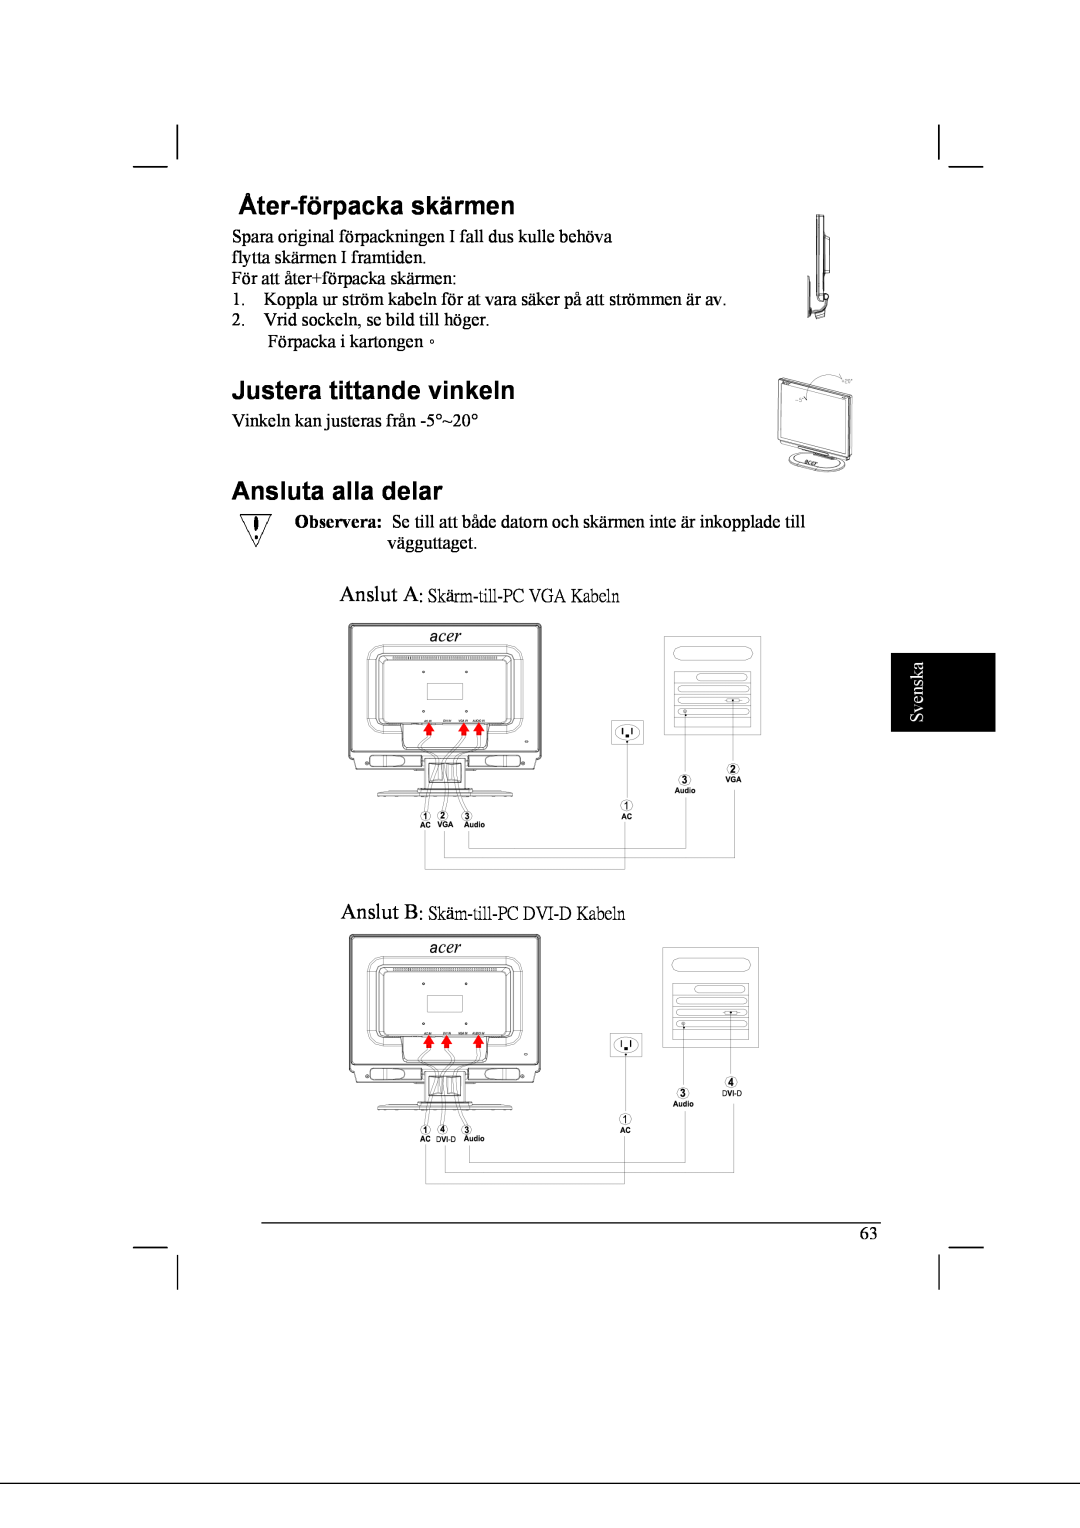 Acer AL2021 manual Åter-förpacka skärmen, Justera tittande vinkeln, Ansluta alla delar, Svenska 